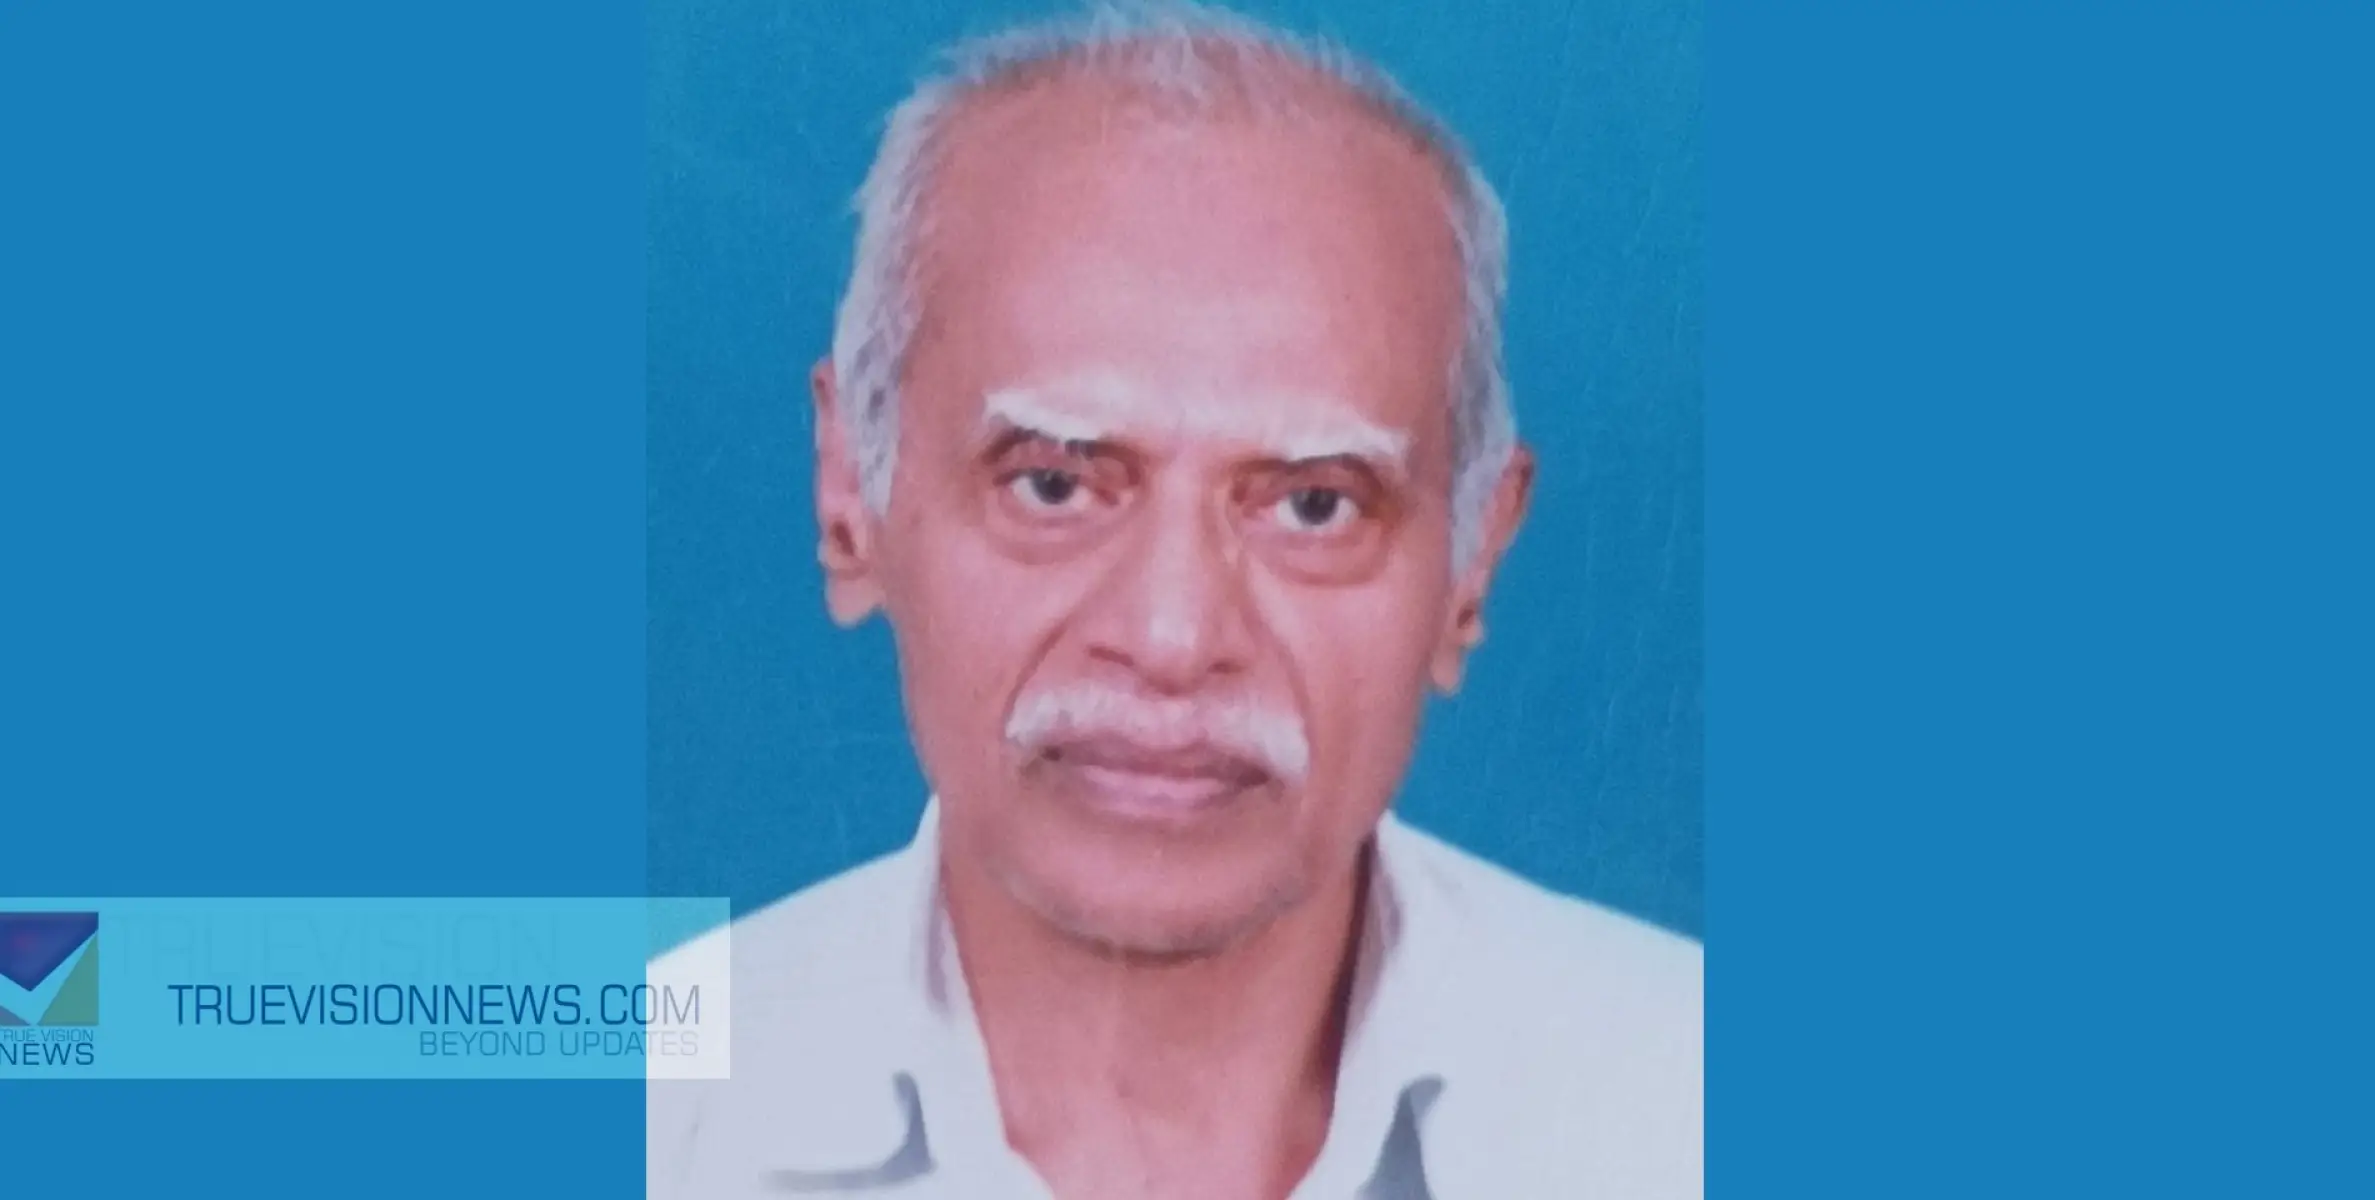 #obituary | തലശ്ശേരി കാവുംഭാഗം കാളിയത്താൻ പീടികക്ക് സമീപം റിട്ട. കൃഷി ഓഫീസർ  എൻ.പി. രാമദാസൻ (84)  നിര്യാതനായി.